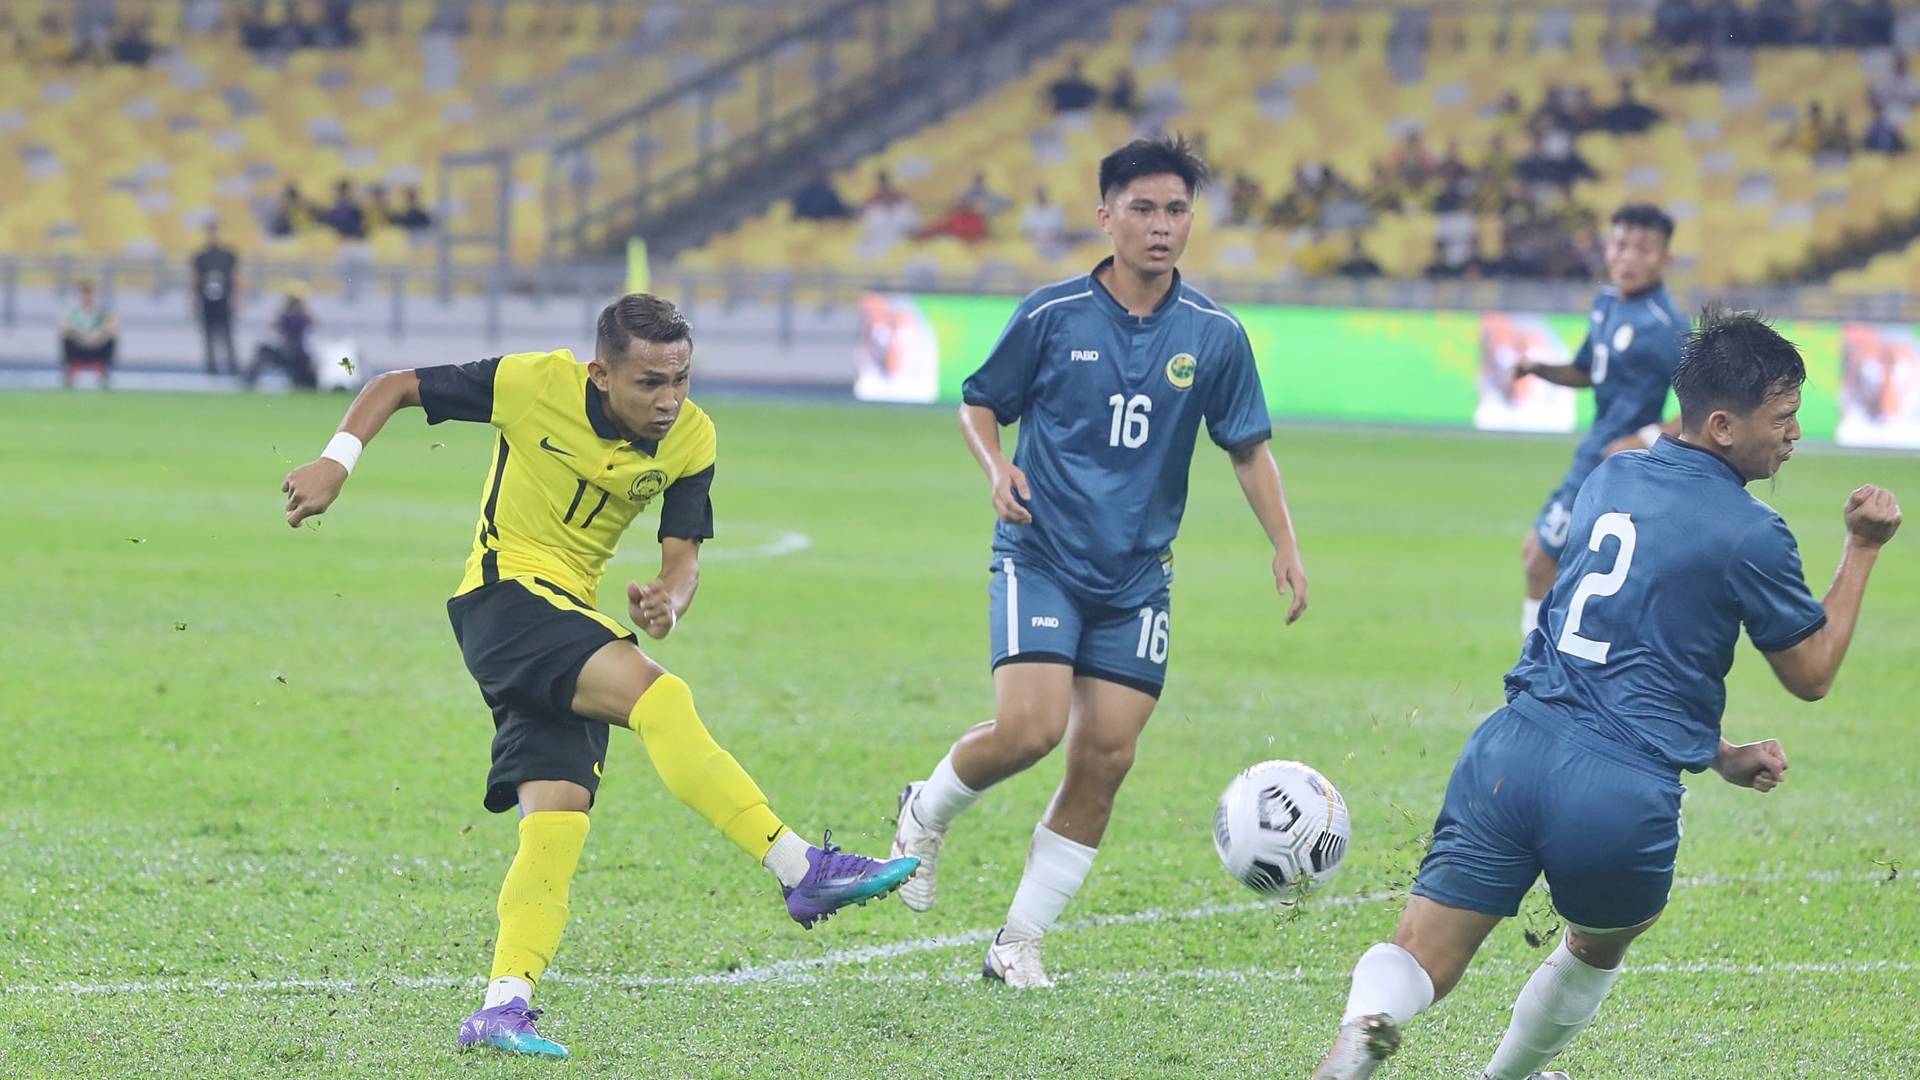 faisal halim malaysia vs brunei 2022 fa malaysia Malaysia Mudah Belasah Brunei, Faisal Halim 'Mengamuk'